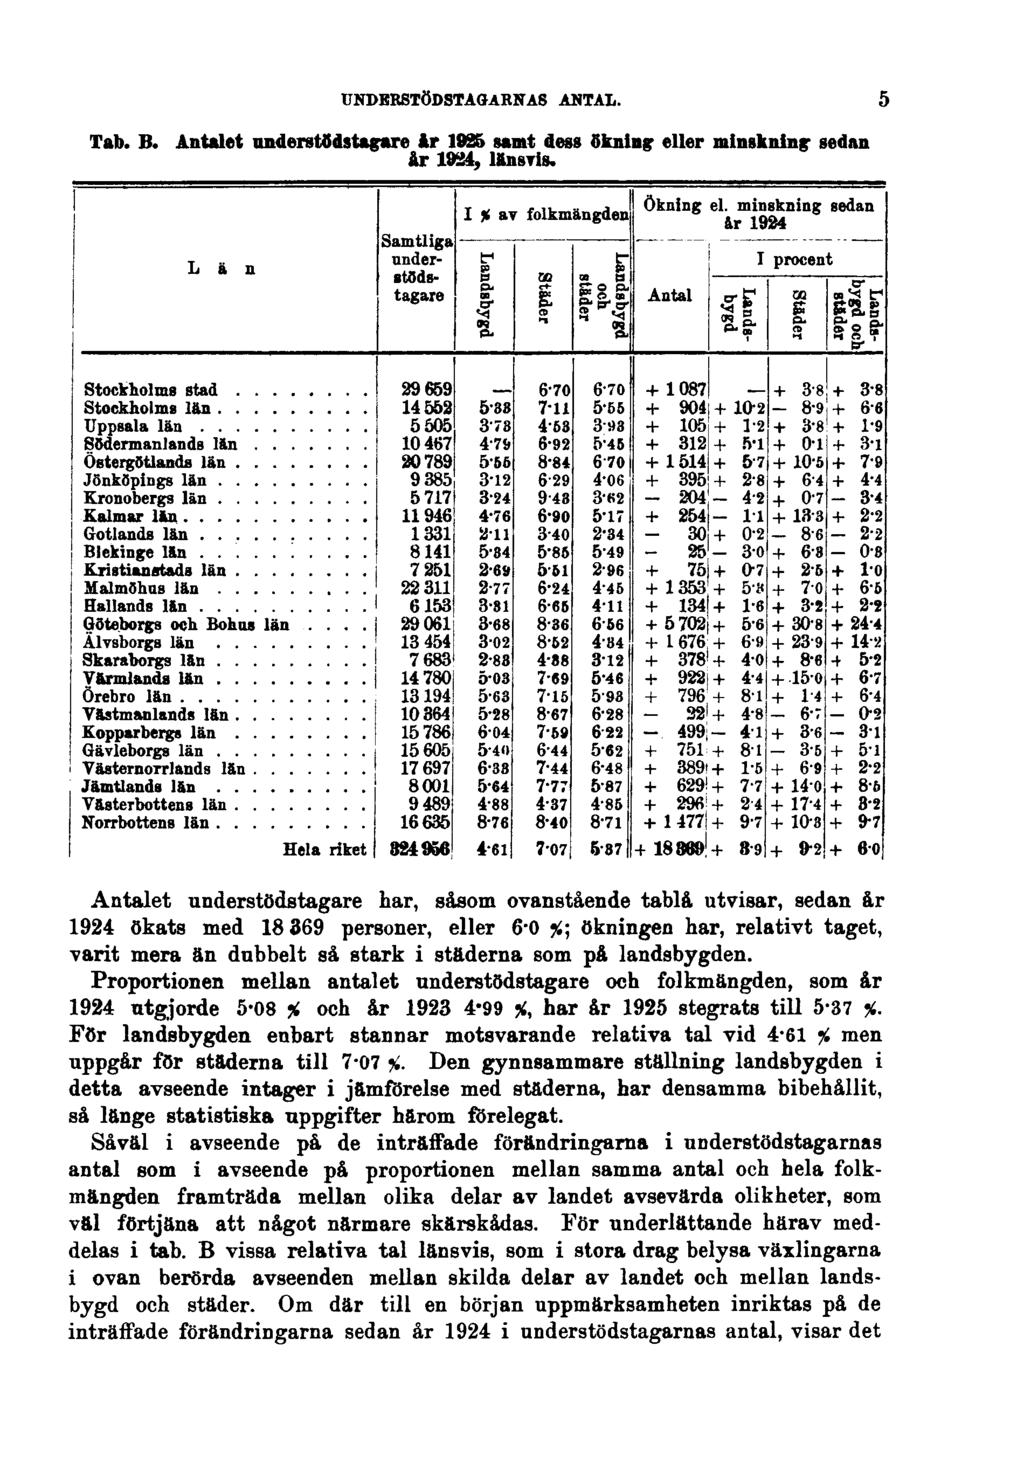 UNDERSTÖDSTAGARNAS ANTAL. Tab. B. Antalet understödstagare år 1925 samt dess ökning eller minskning sedan år 1924, länsvis.